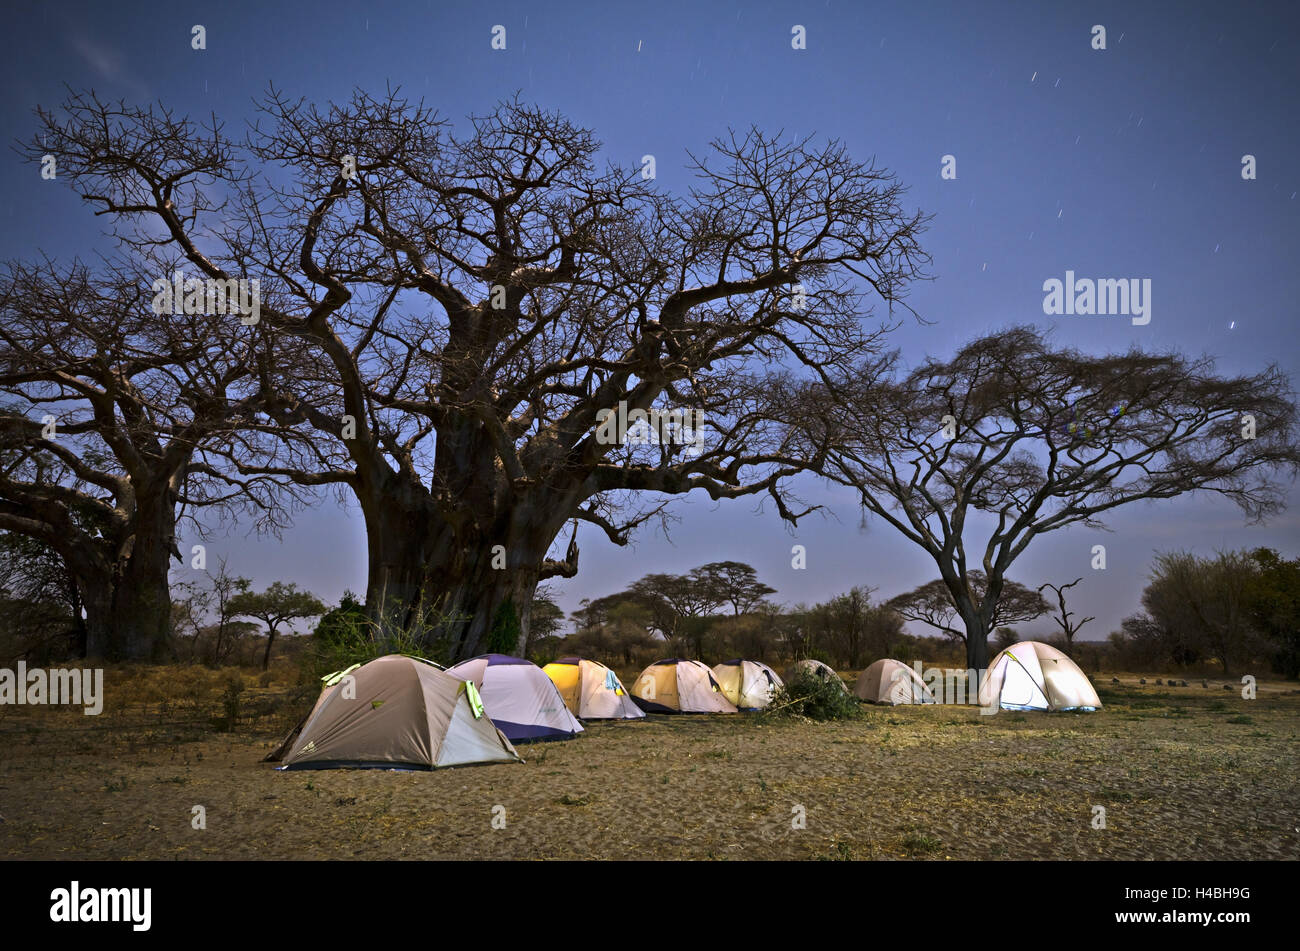 Africa, East Africa, Tanzania, Tarangire National Park, tent camp, camp site, Stock Photo